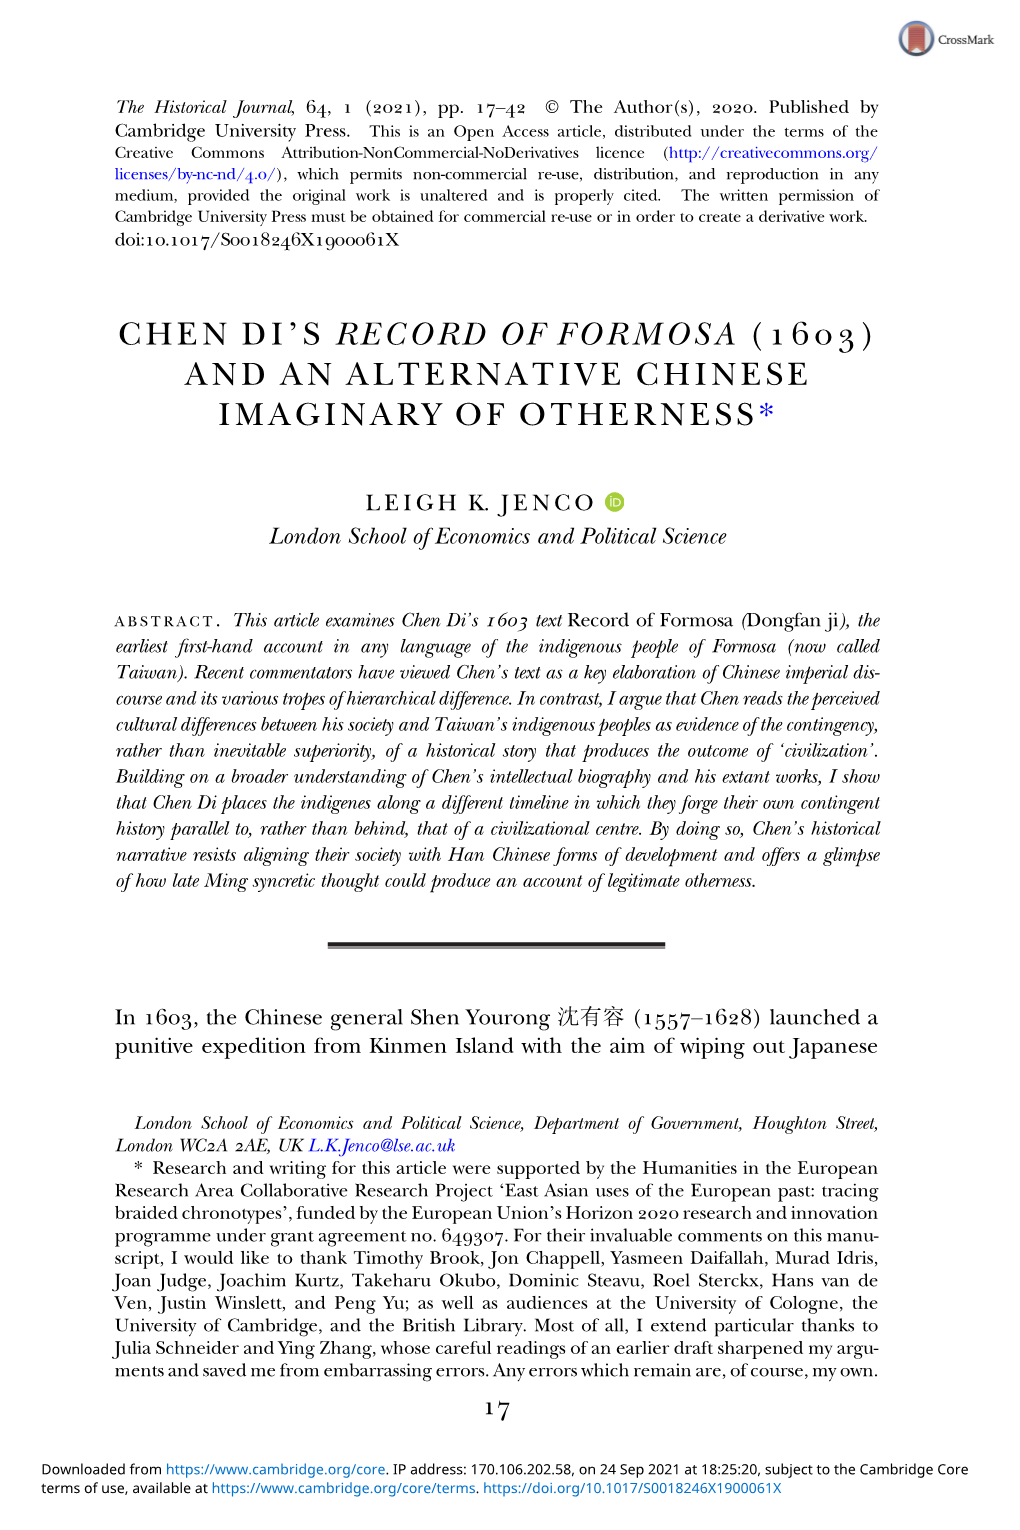 Chen Di's Record of Formosa